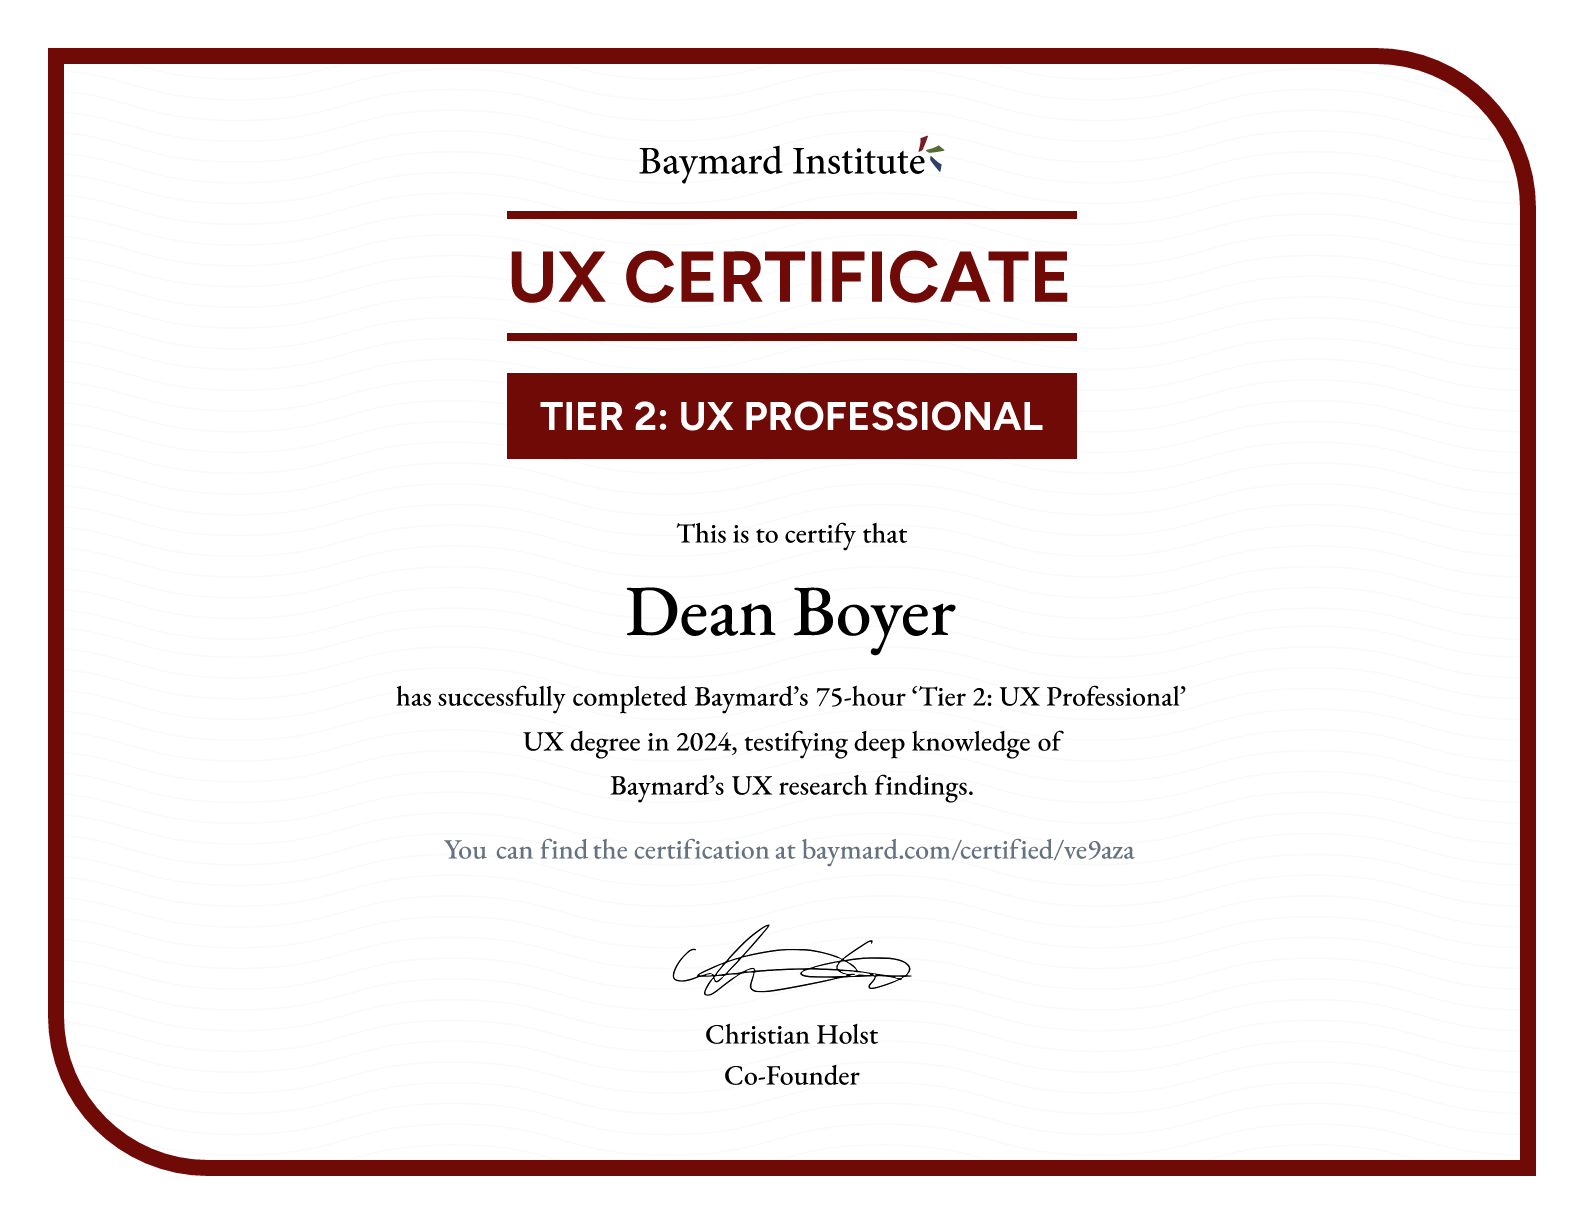 Dean Boyer’s certificate